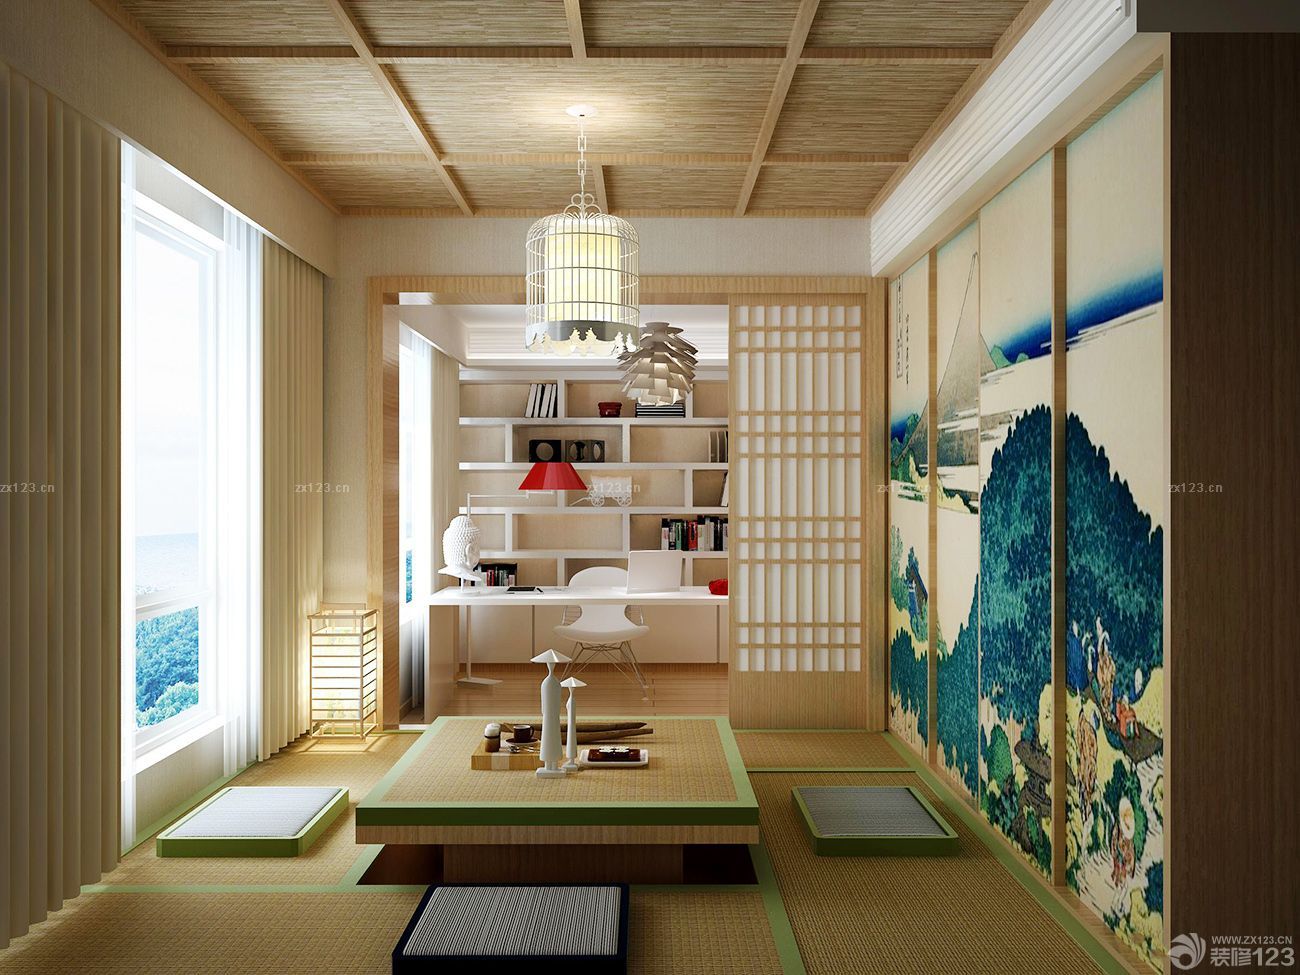 最新日式风格两居室房屋阳台休闲区装修图片